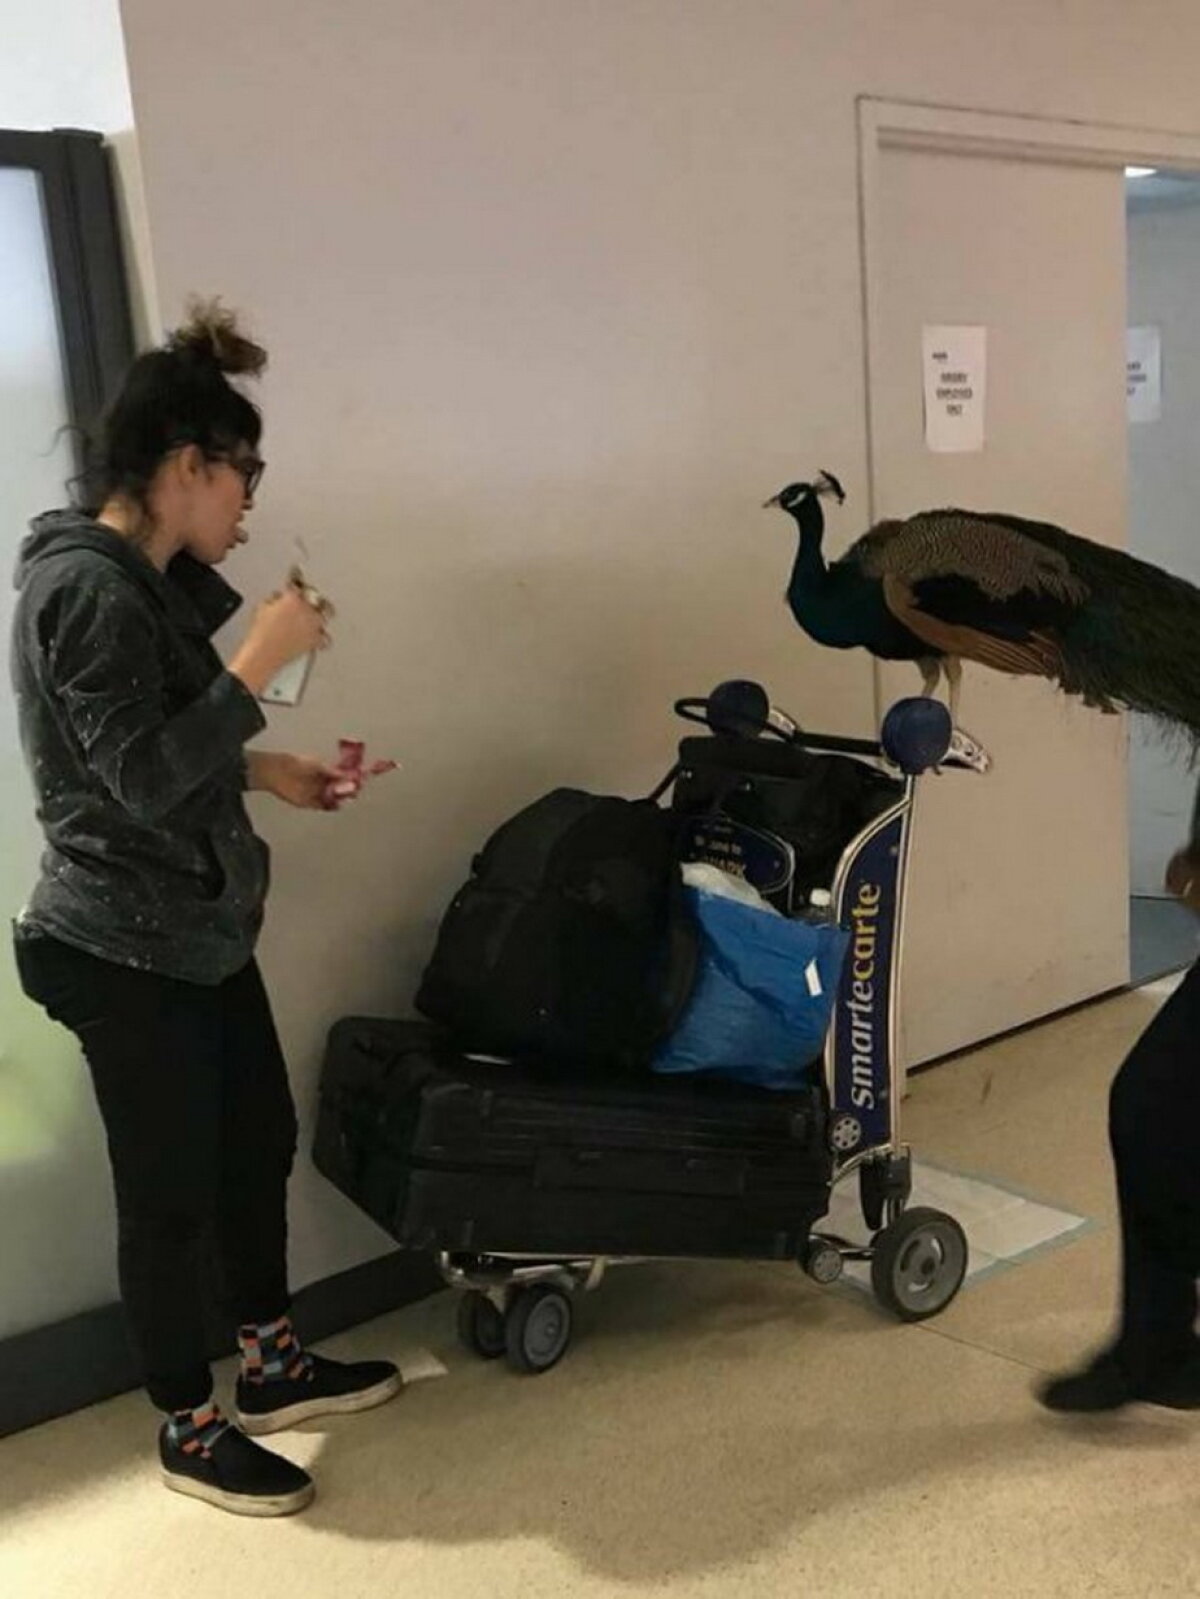 FOTO Imagini amuzante din aeroportul Newark Liberty. Uite de cine a venit însoţită o femeie!